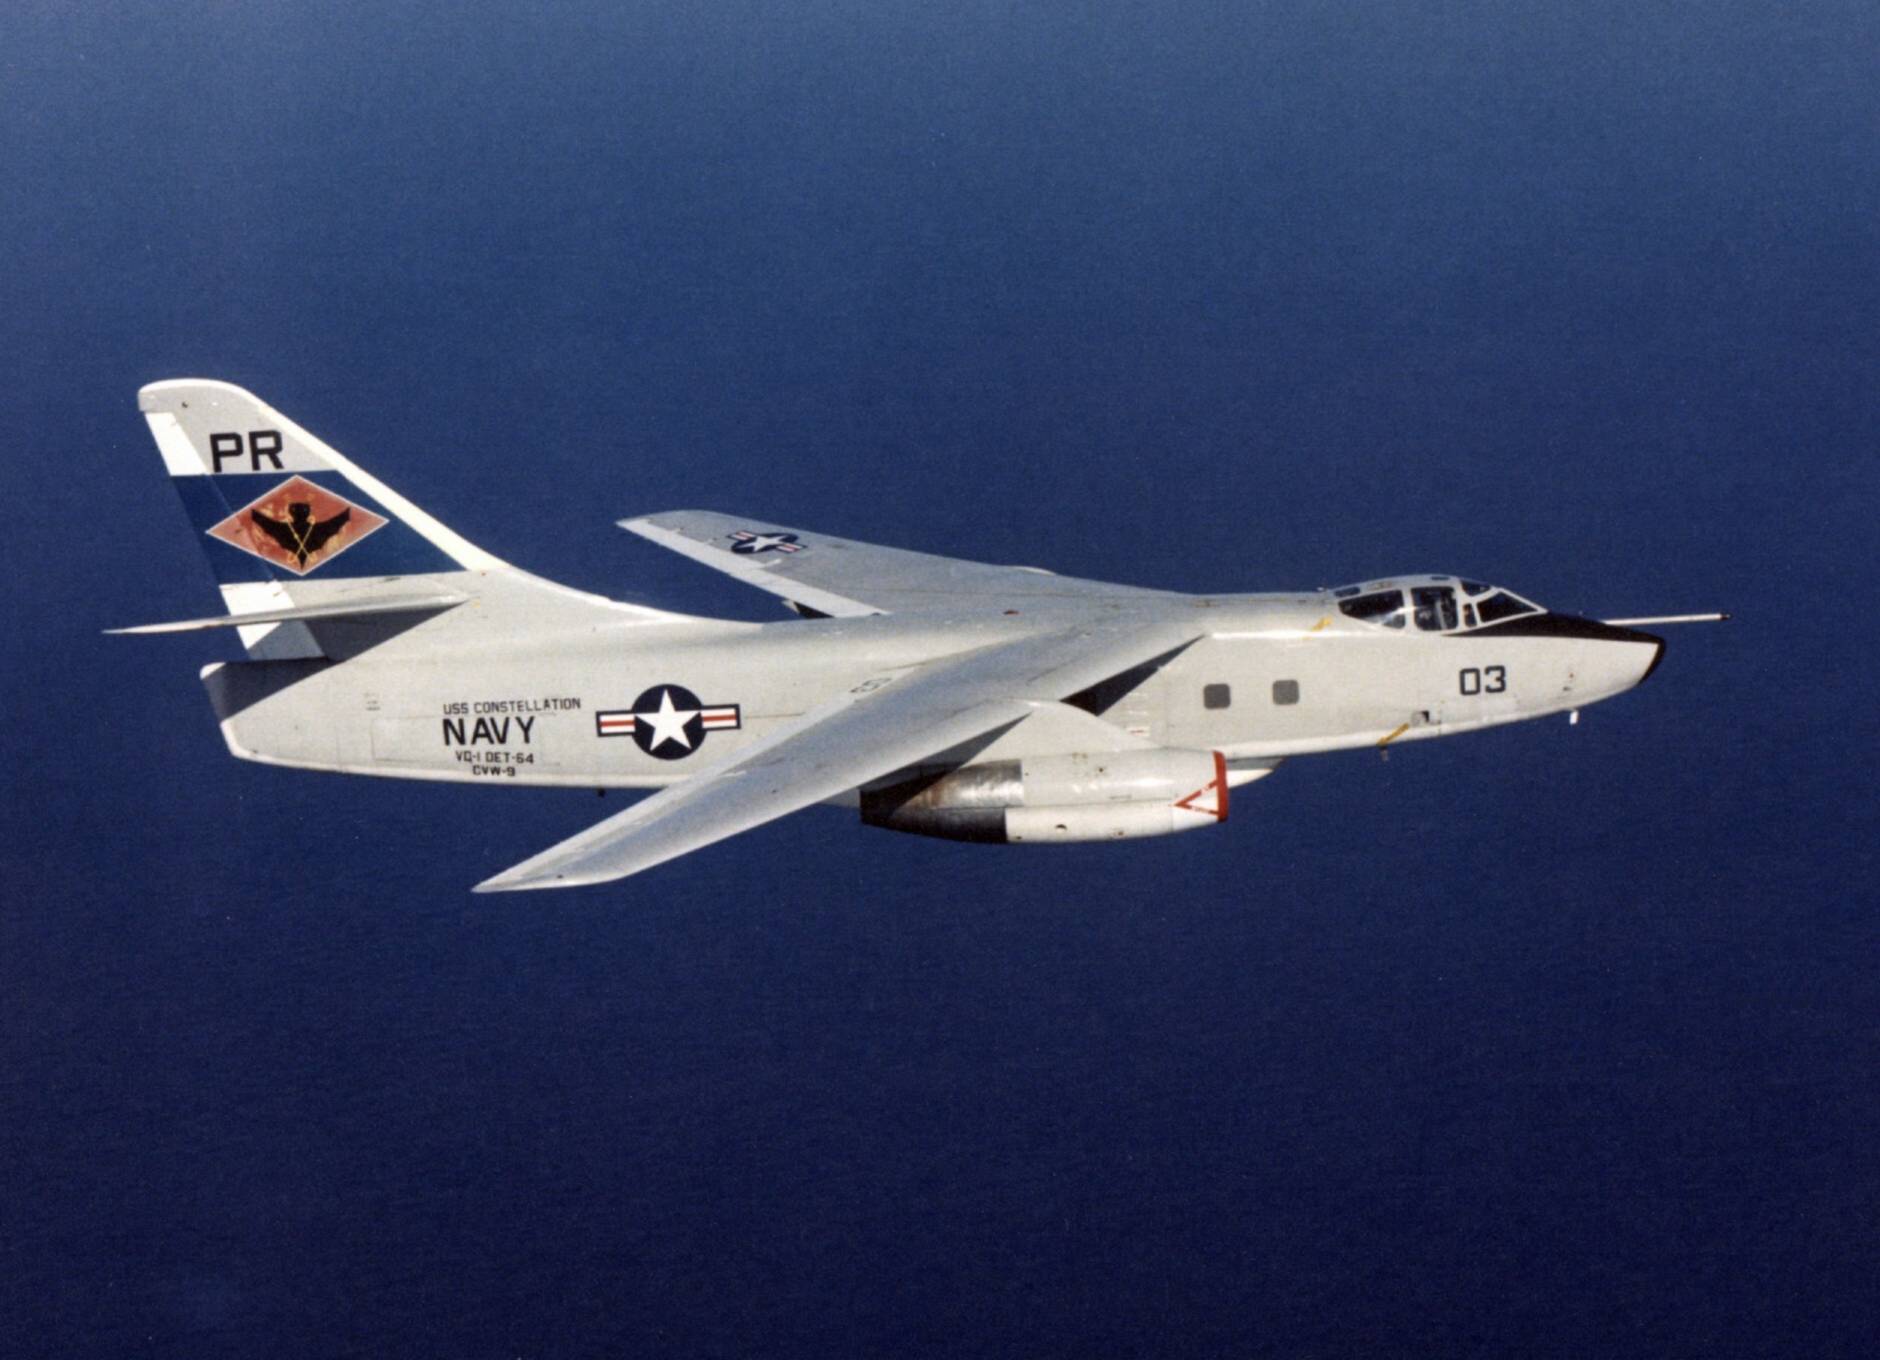 原创舰载机中占有重要地位,曾辉煌一时的a-3"空中武士"攻击机